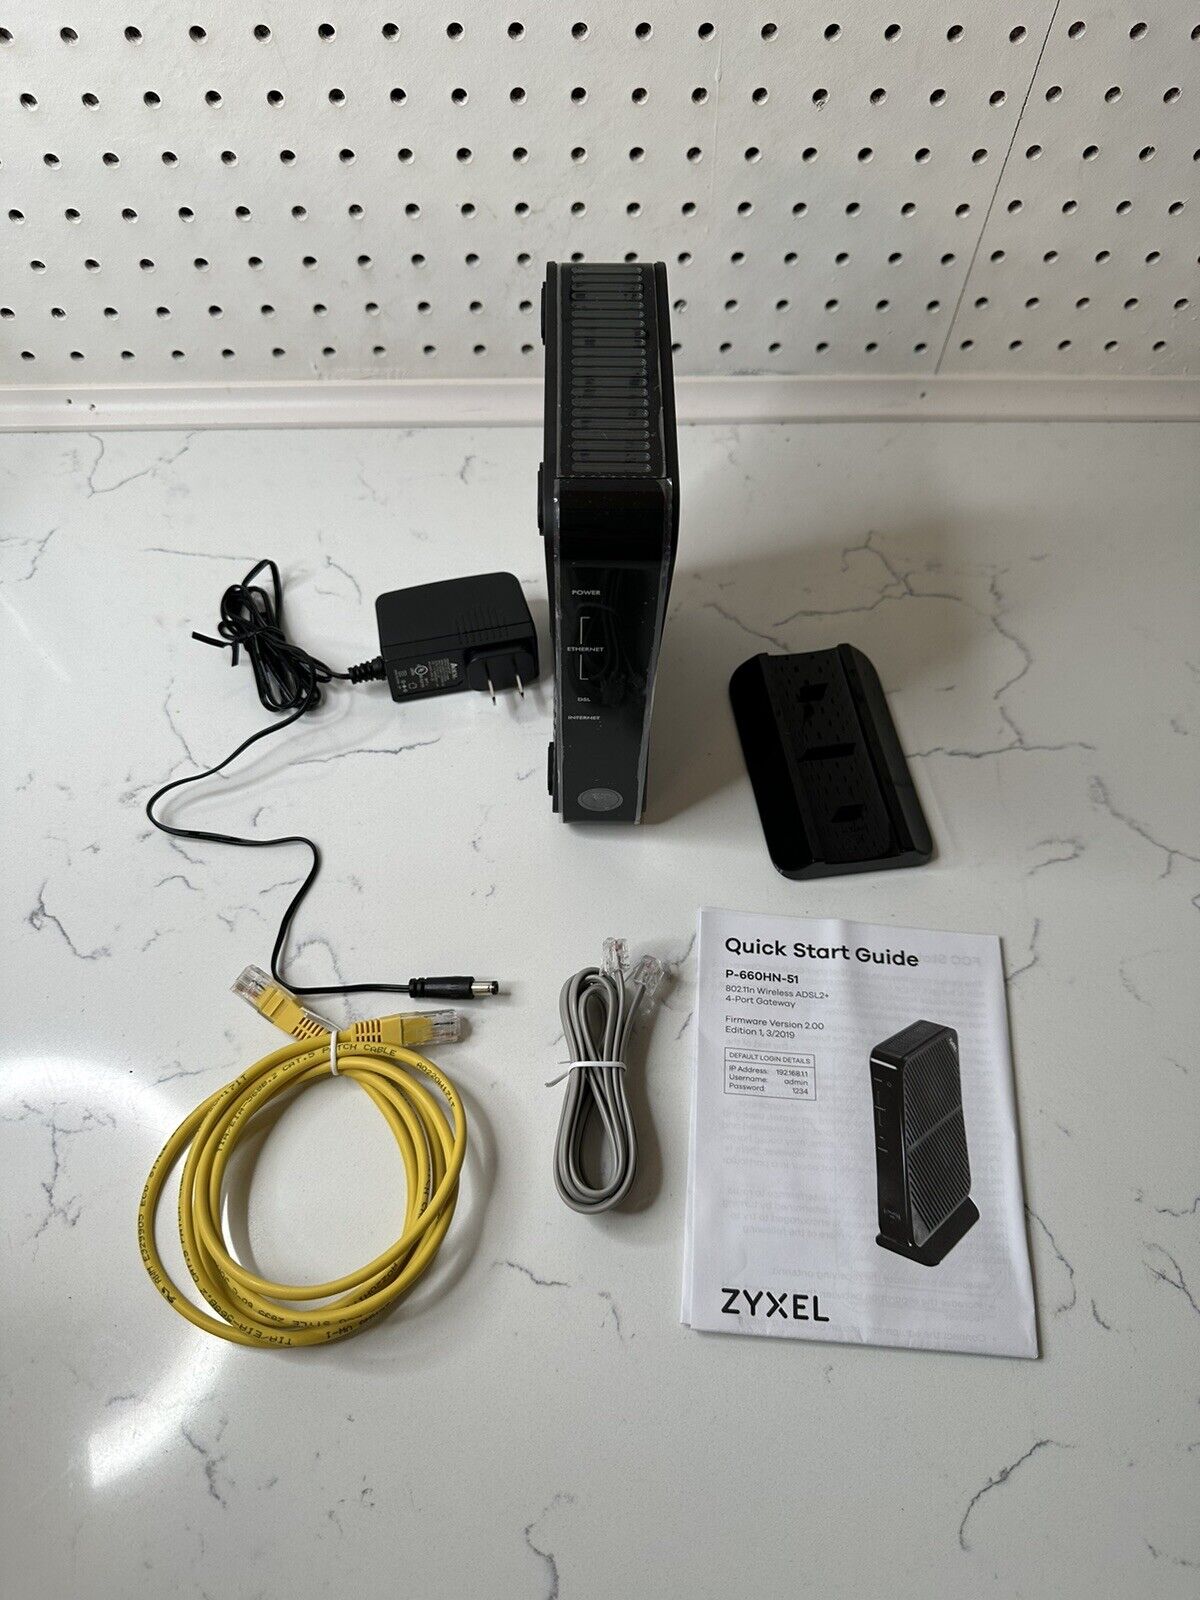 Zyxel P-660HN-51 Wireless WiFi Router Open Box